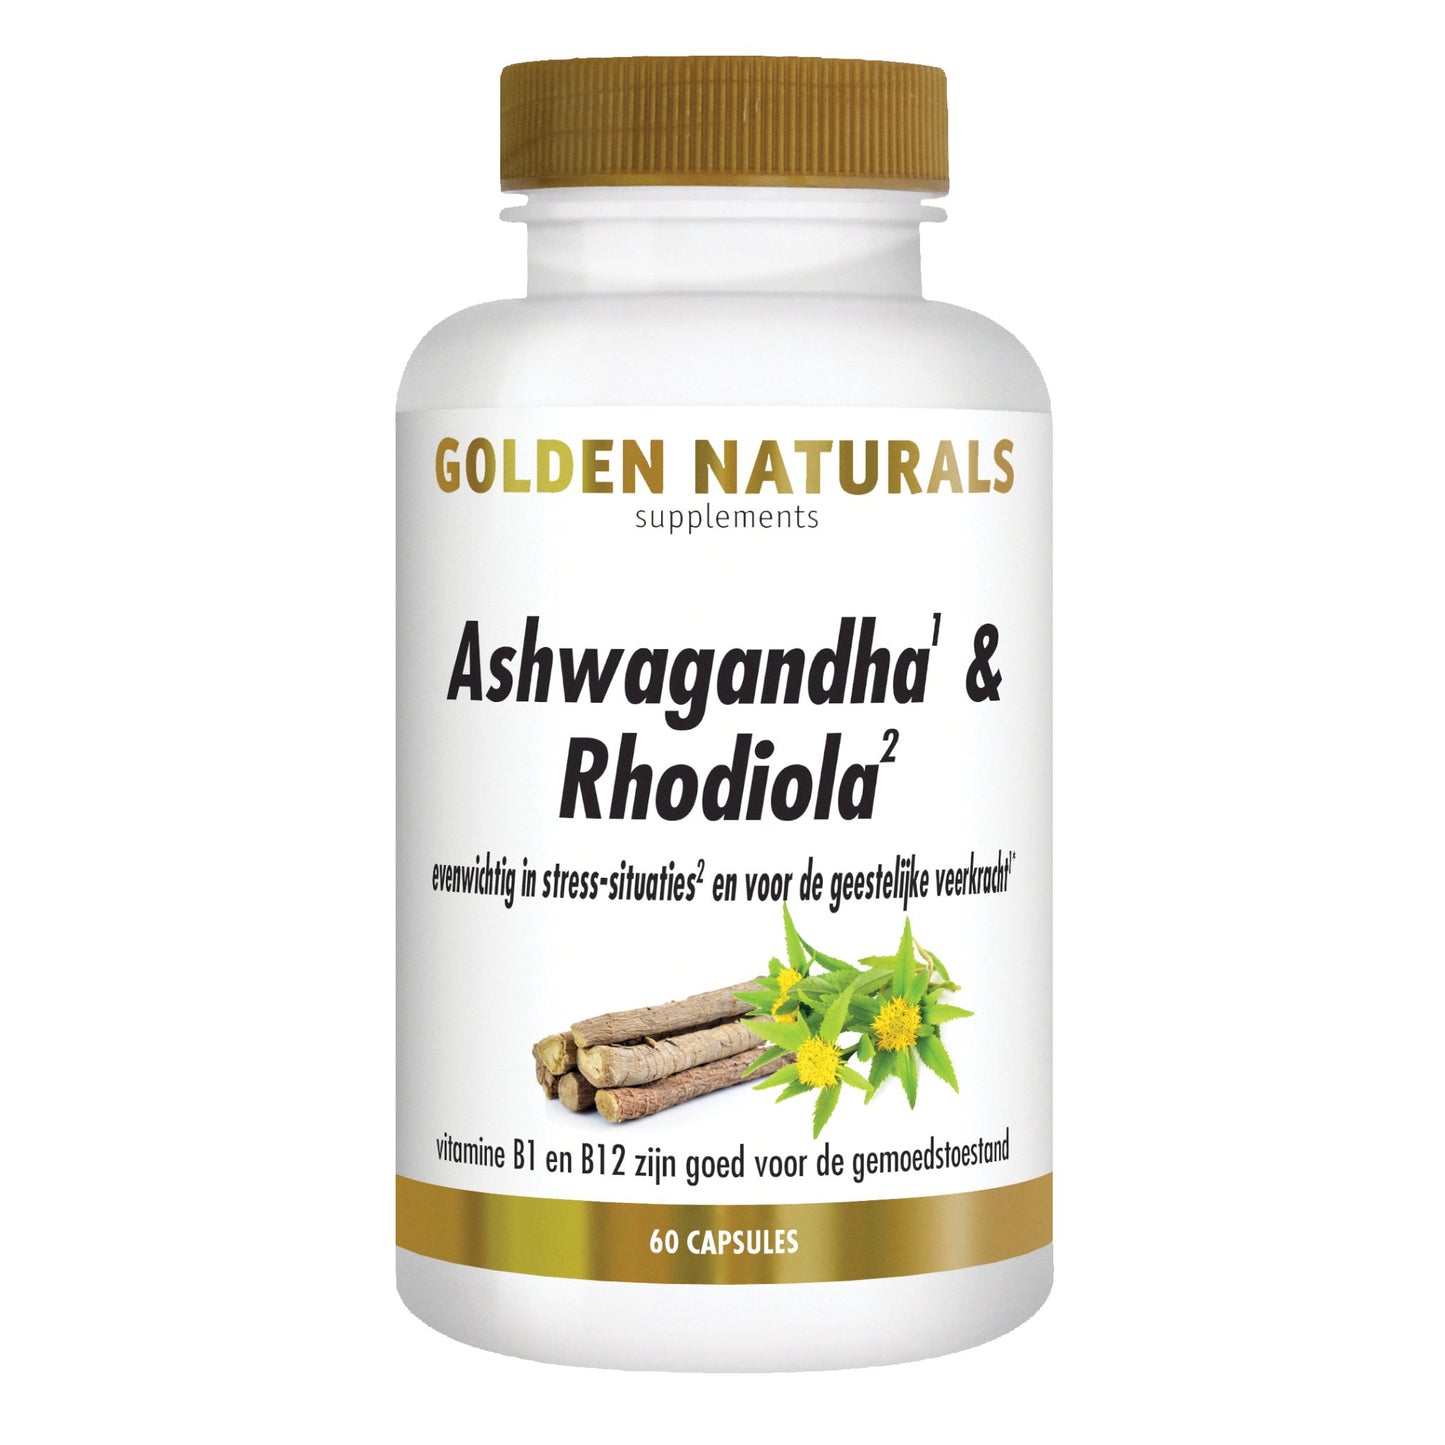 Ashwagandha & Rhodiola - 60 - vegetarische capsules Supplement Golden Naturals   